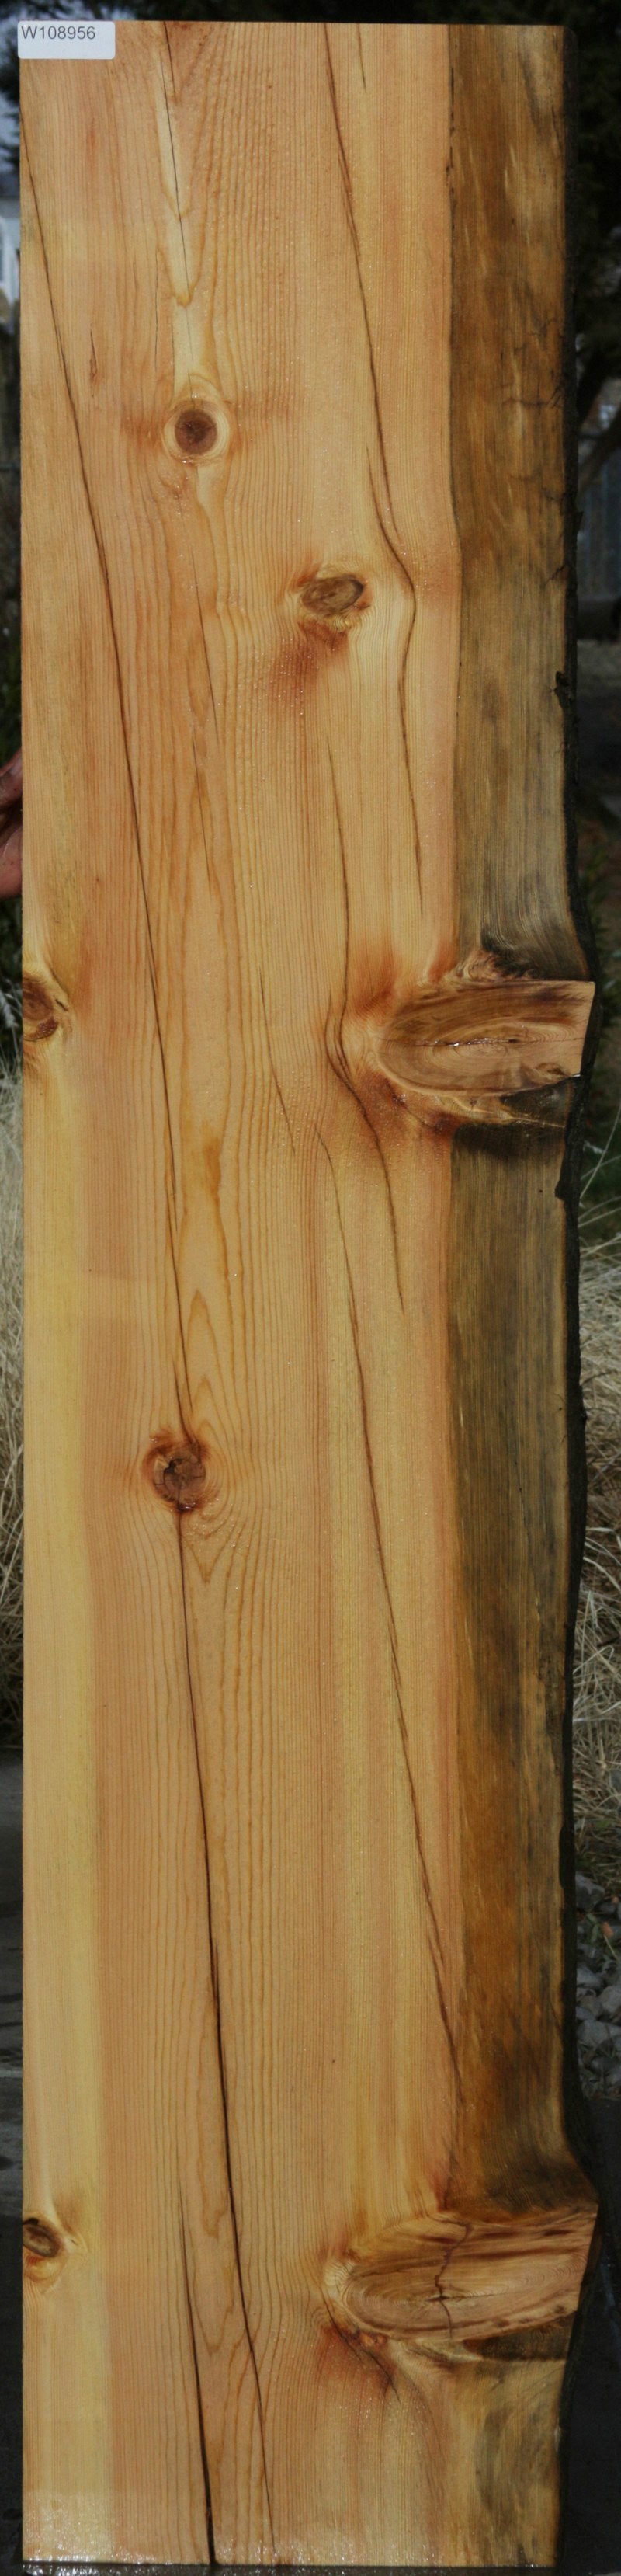 Natural Rustic Red Cedar Mantel